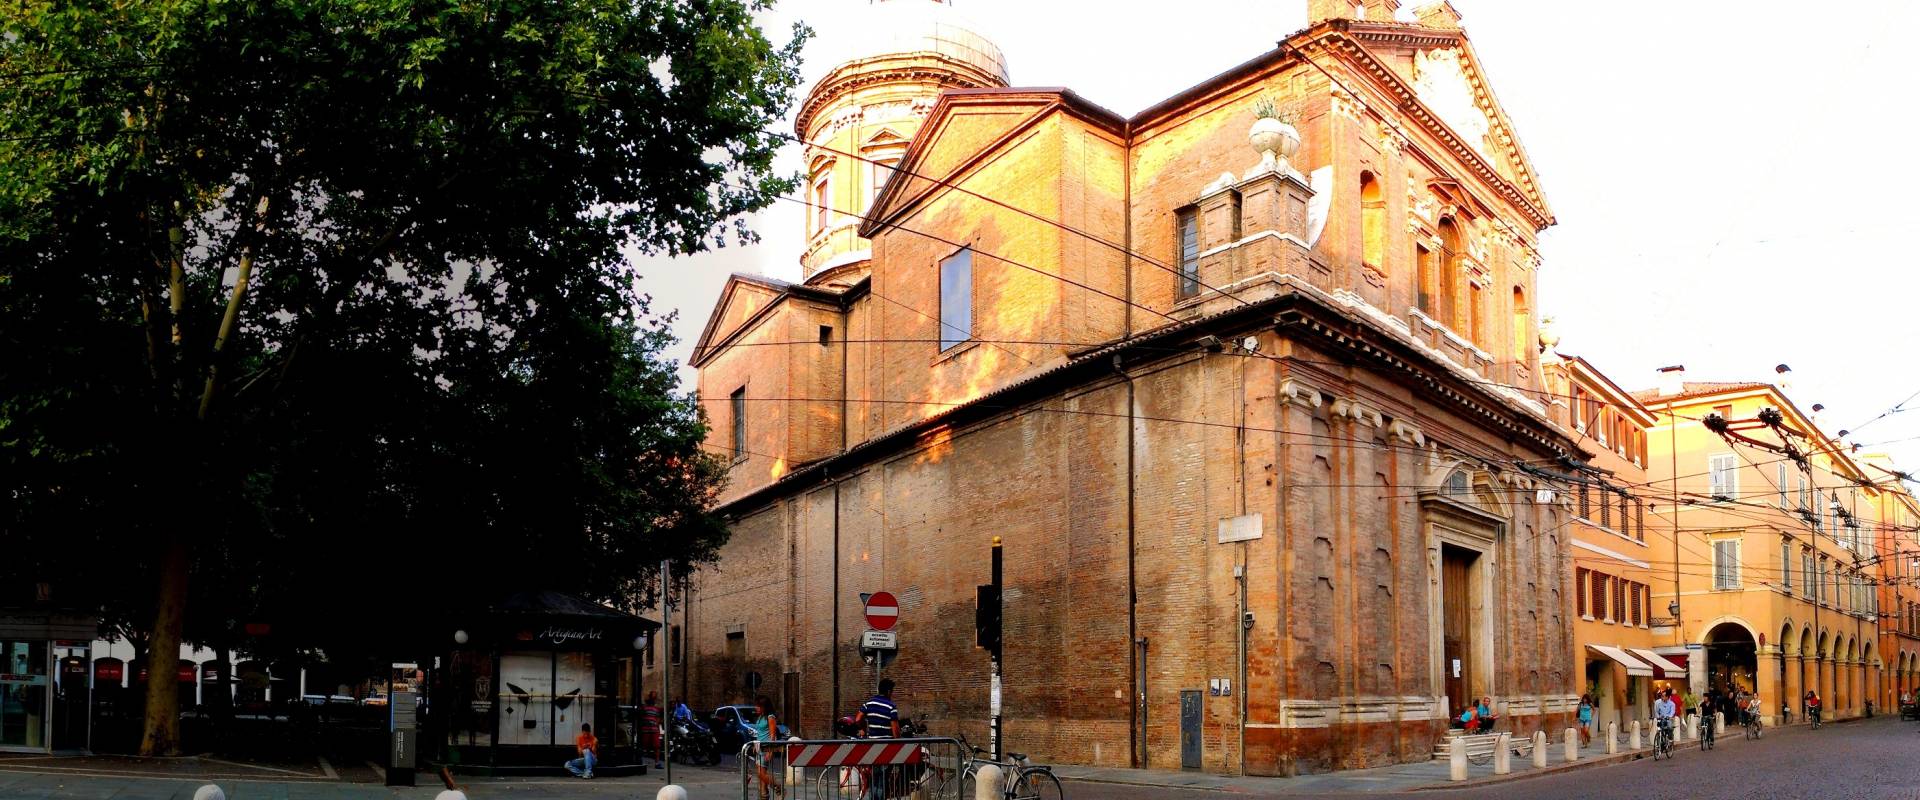 Chiesa del Voto, Modena foto di AngMCMXCI